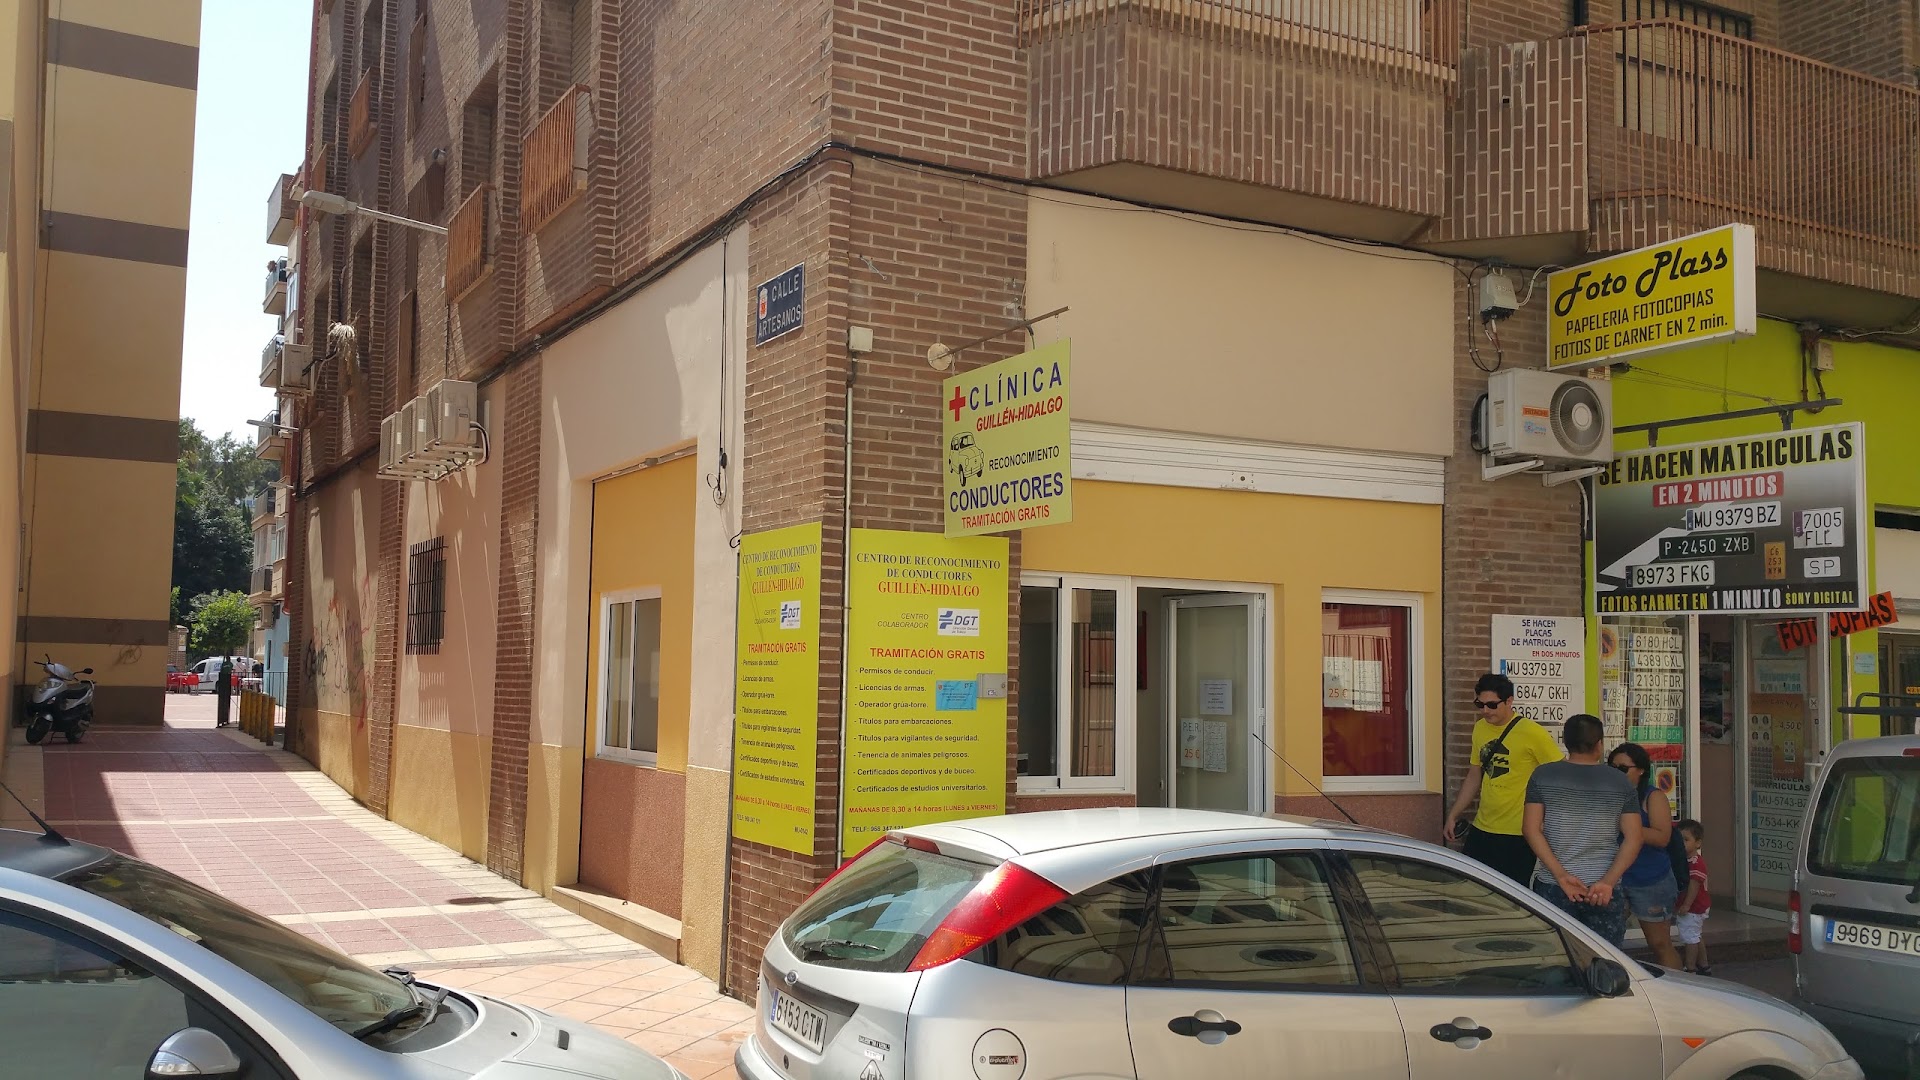 Renovar Carnet de Conducir en Murcia - Clínica Guillén Hidalgo